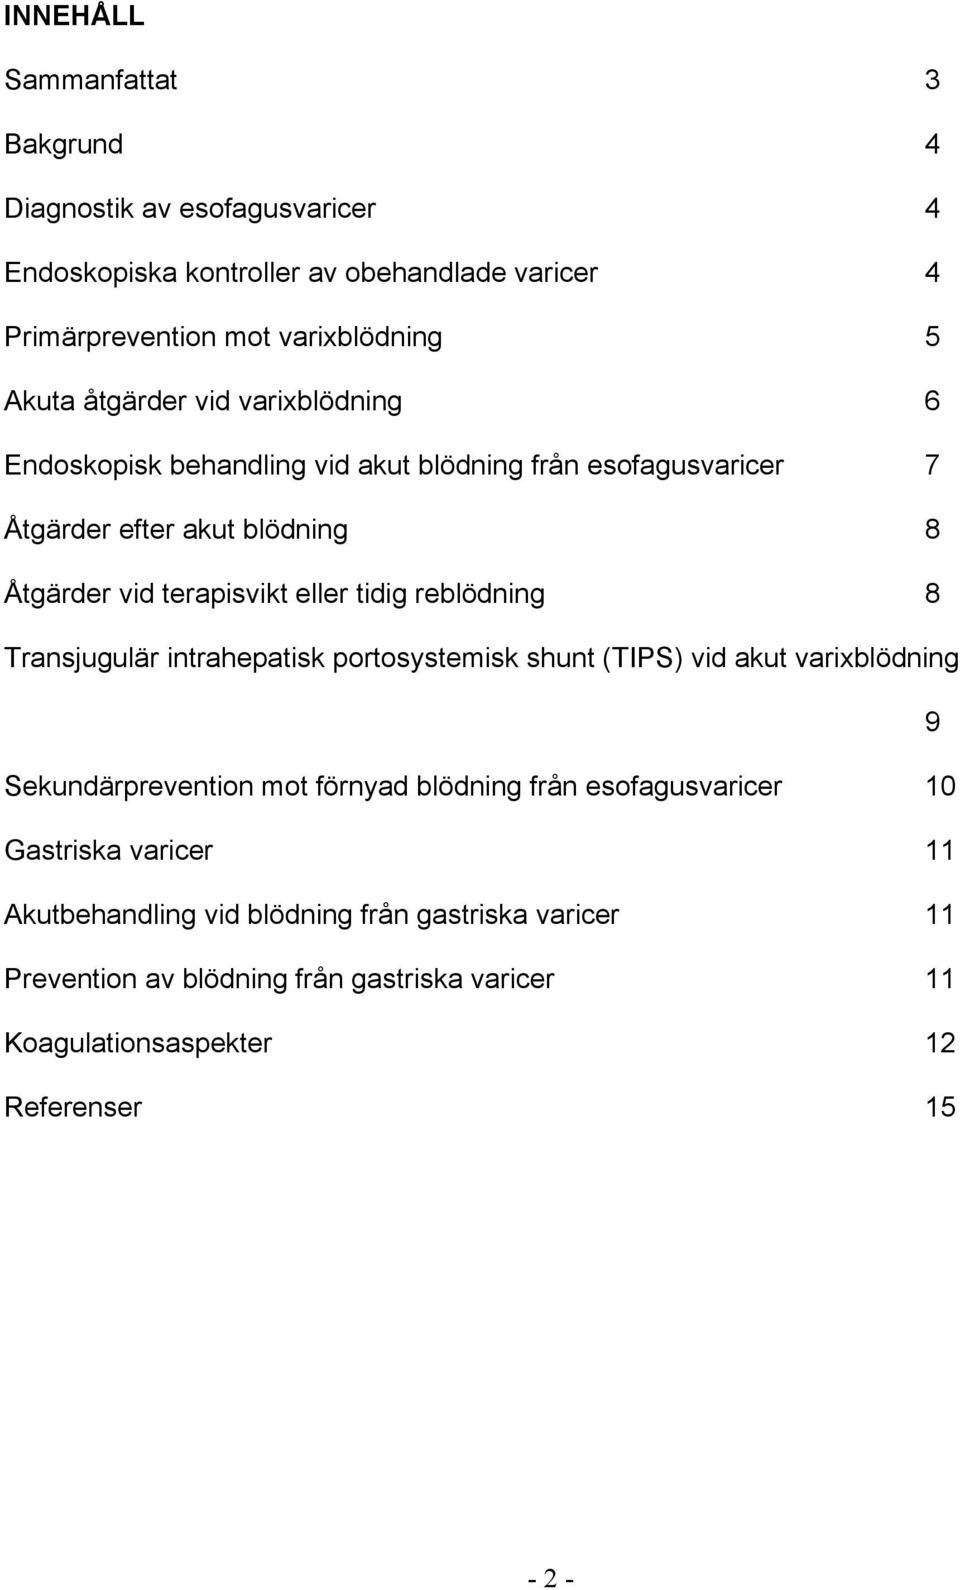 reblödning 8 Transjugulär intrahepatisk portosystemisk shunt (TIPS) vid akut varixblödning 9 Sekundärprevention mot förnyad blödning från esofagusvaricer 10